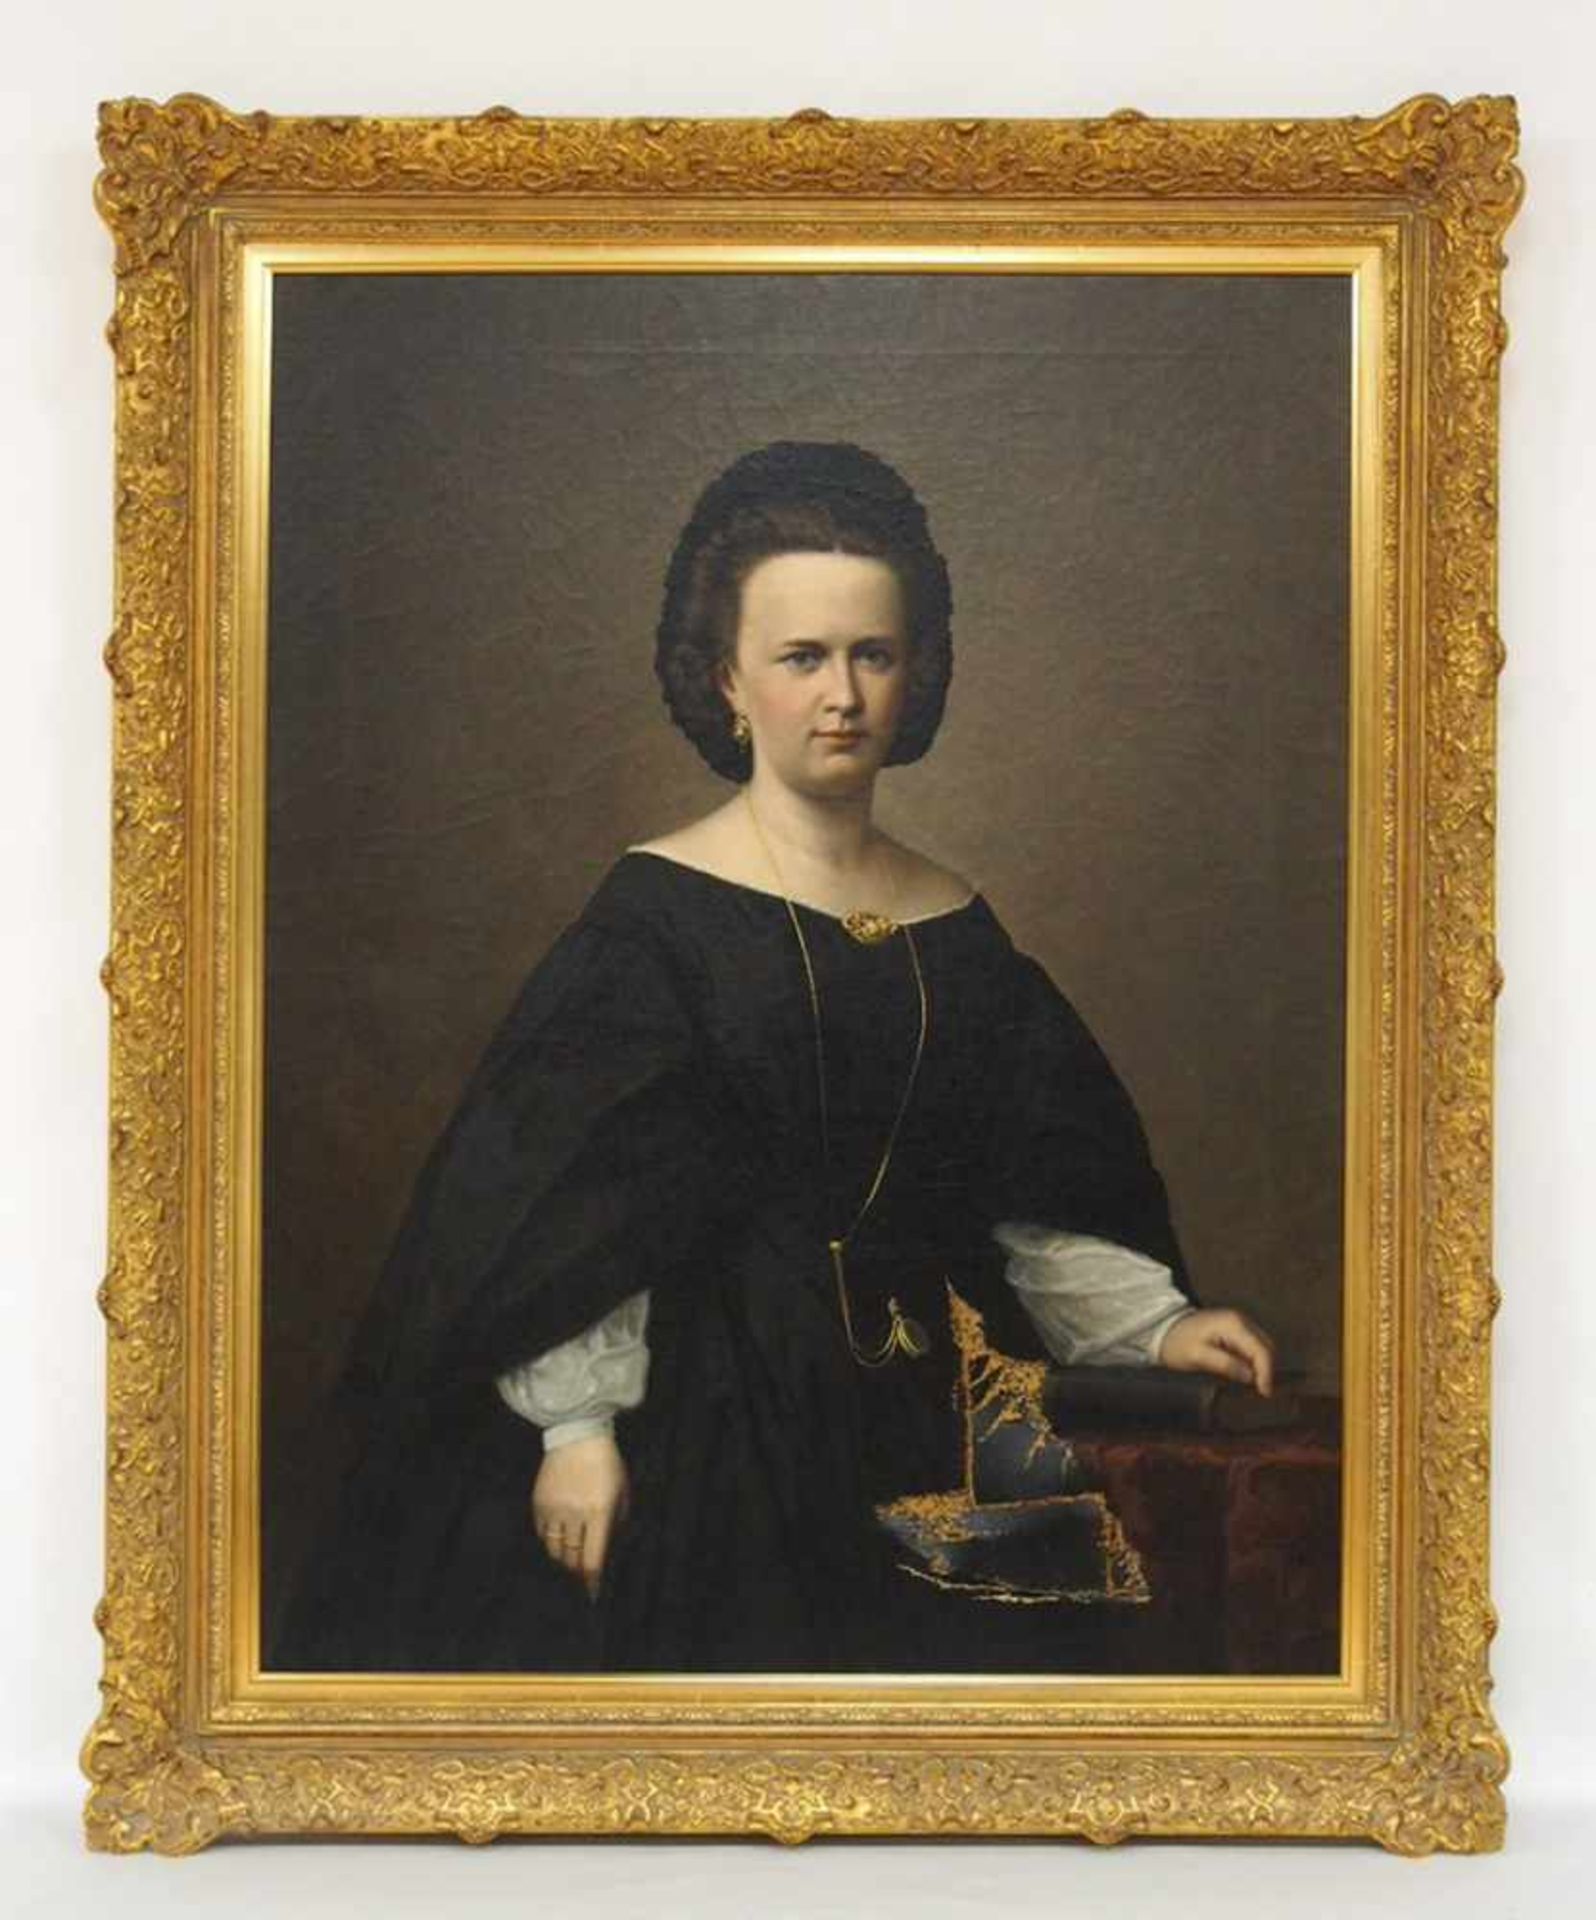 DEUTSCHER MEISTER19. Jh.DamenporträtÖl auf Leinwand, 98 x 78 cm, Rahmen (Riss in der Leinwand)- - - - Image 2 of 2